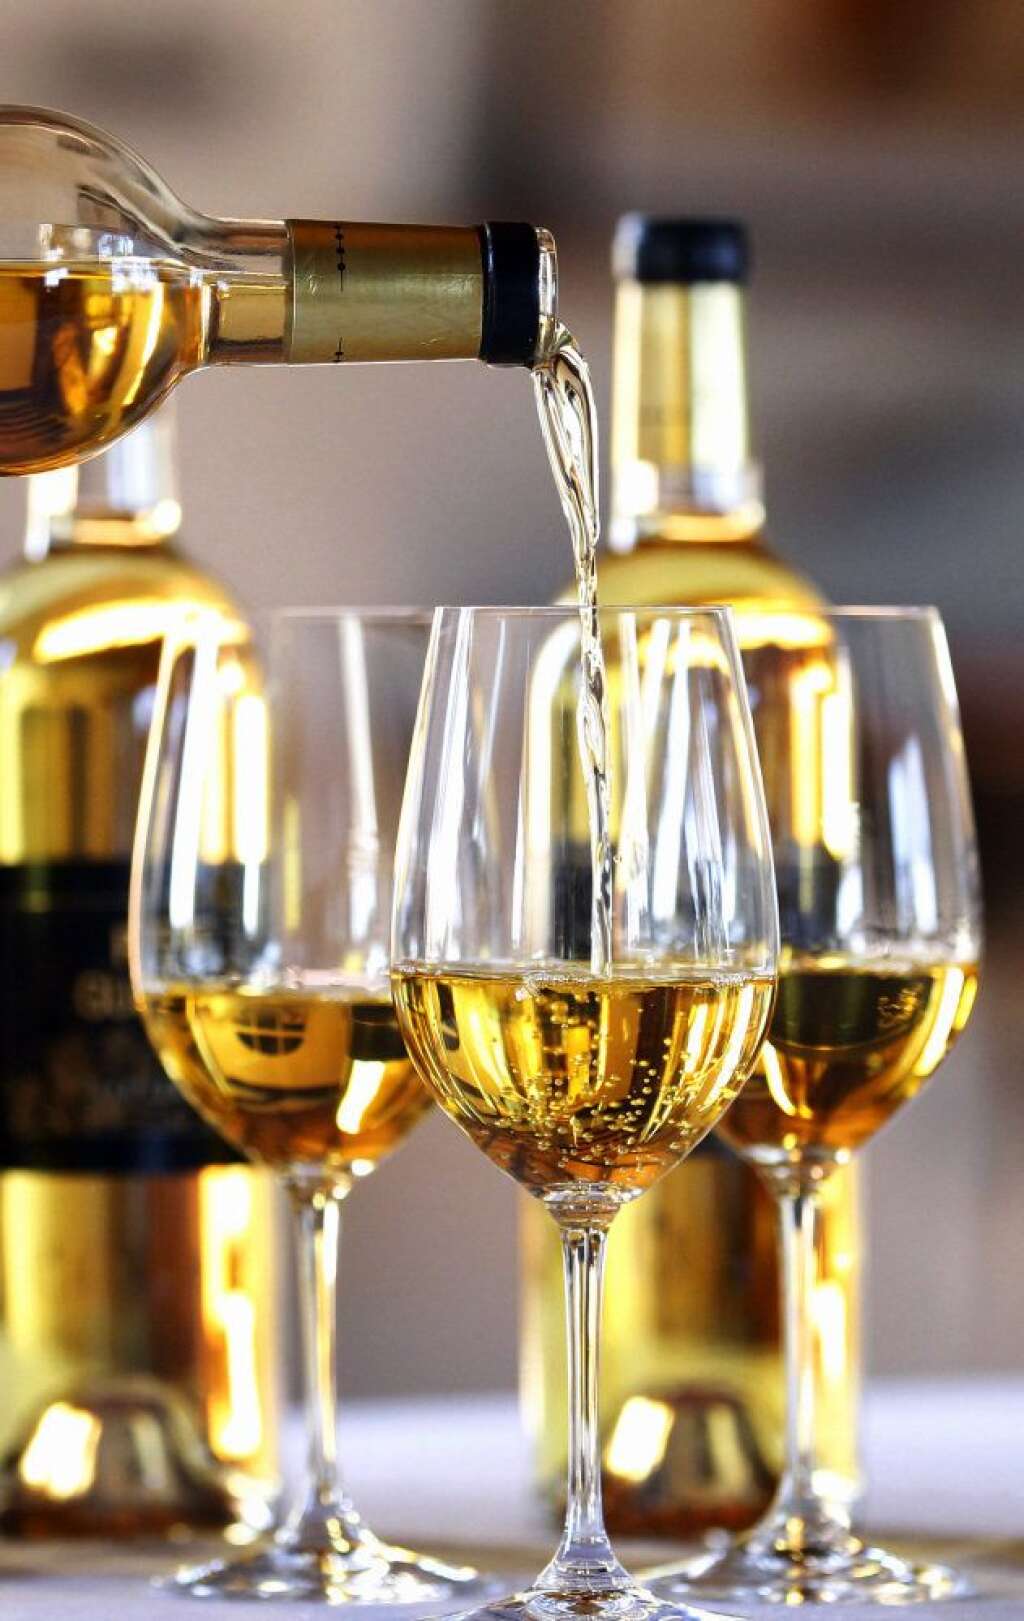 Adieu champagne, bonjour muscadet - A Matignon, les fines bulles ont été remplacées par "un muscadet sec, originaire de Loire-Atlantique comme Ayrault", indique-t-on à son cabinet.